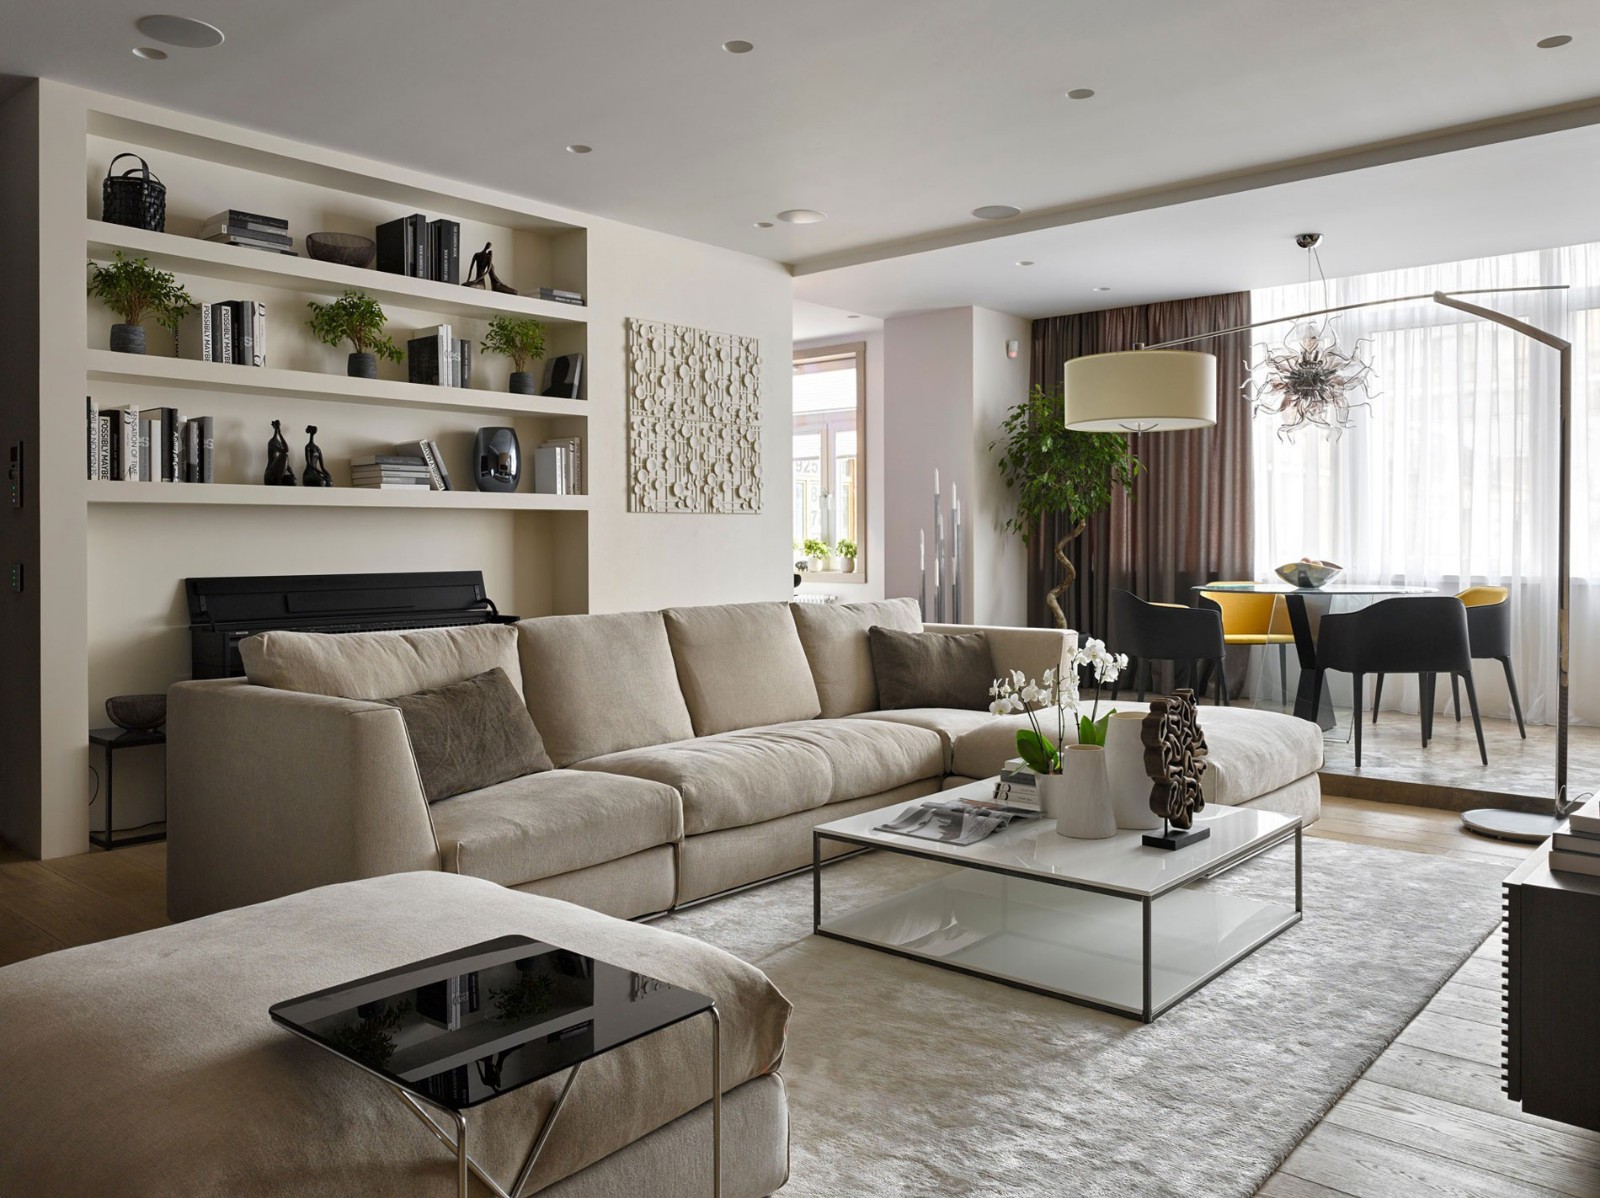 公寓装修,70平米装修,10-15万装修,现代简约风格,沙发,米色,客厅